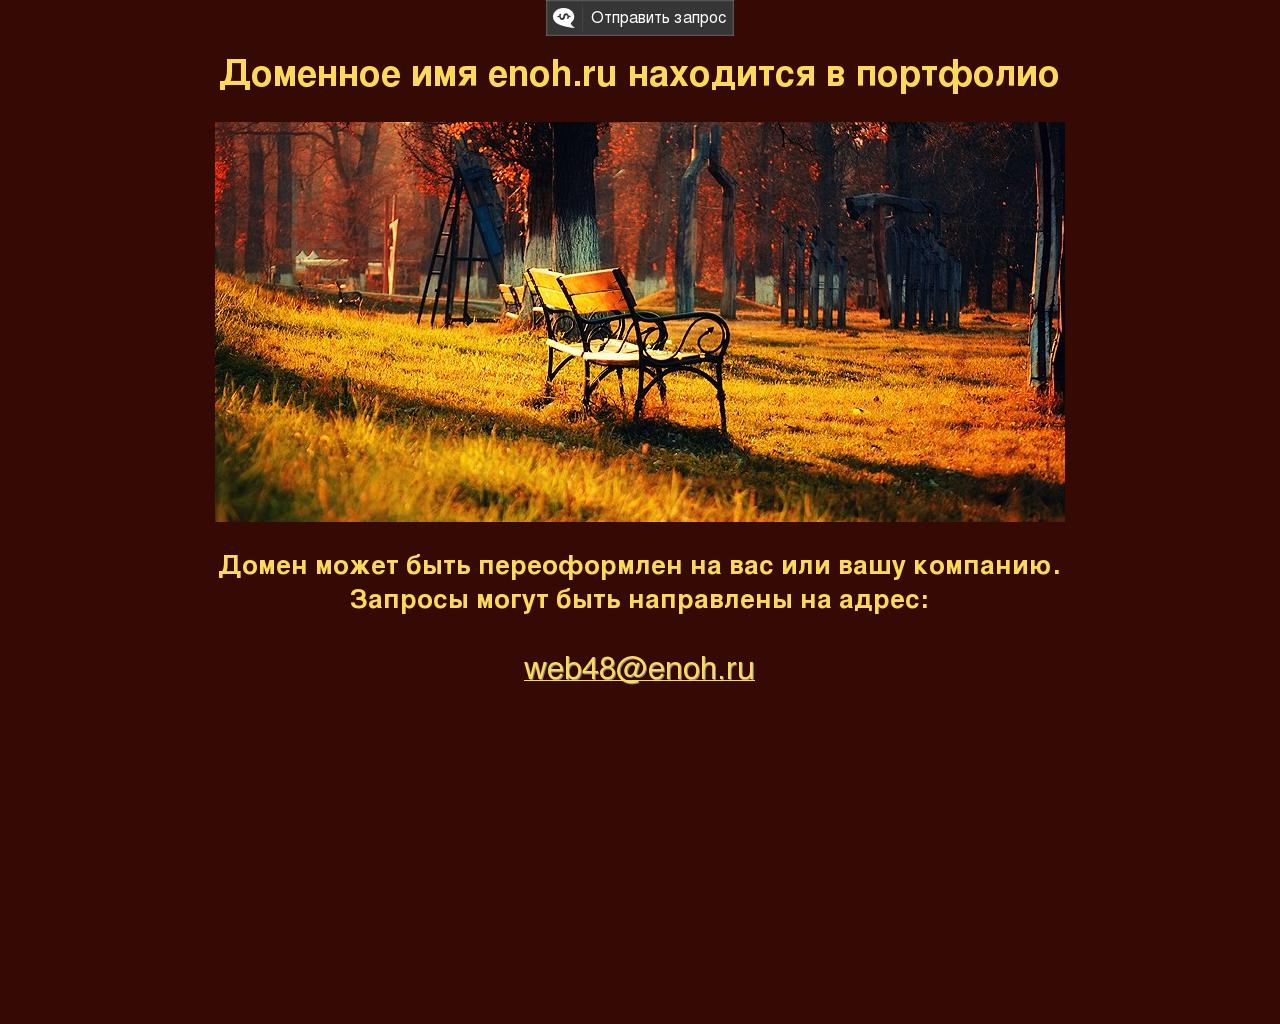 Изображение сайта enoh.ru в разрешении 1280x1024